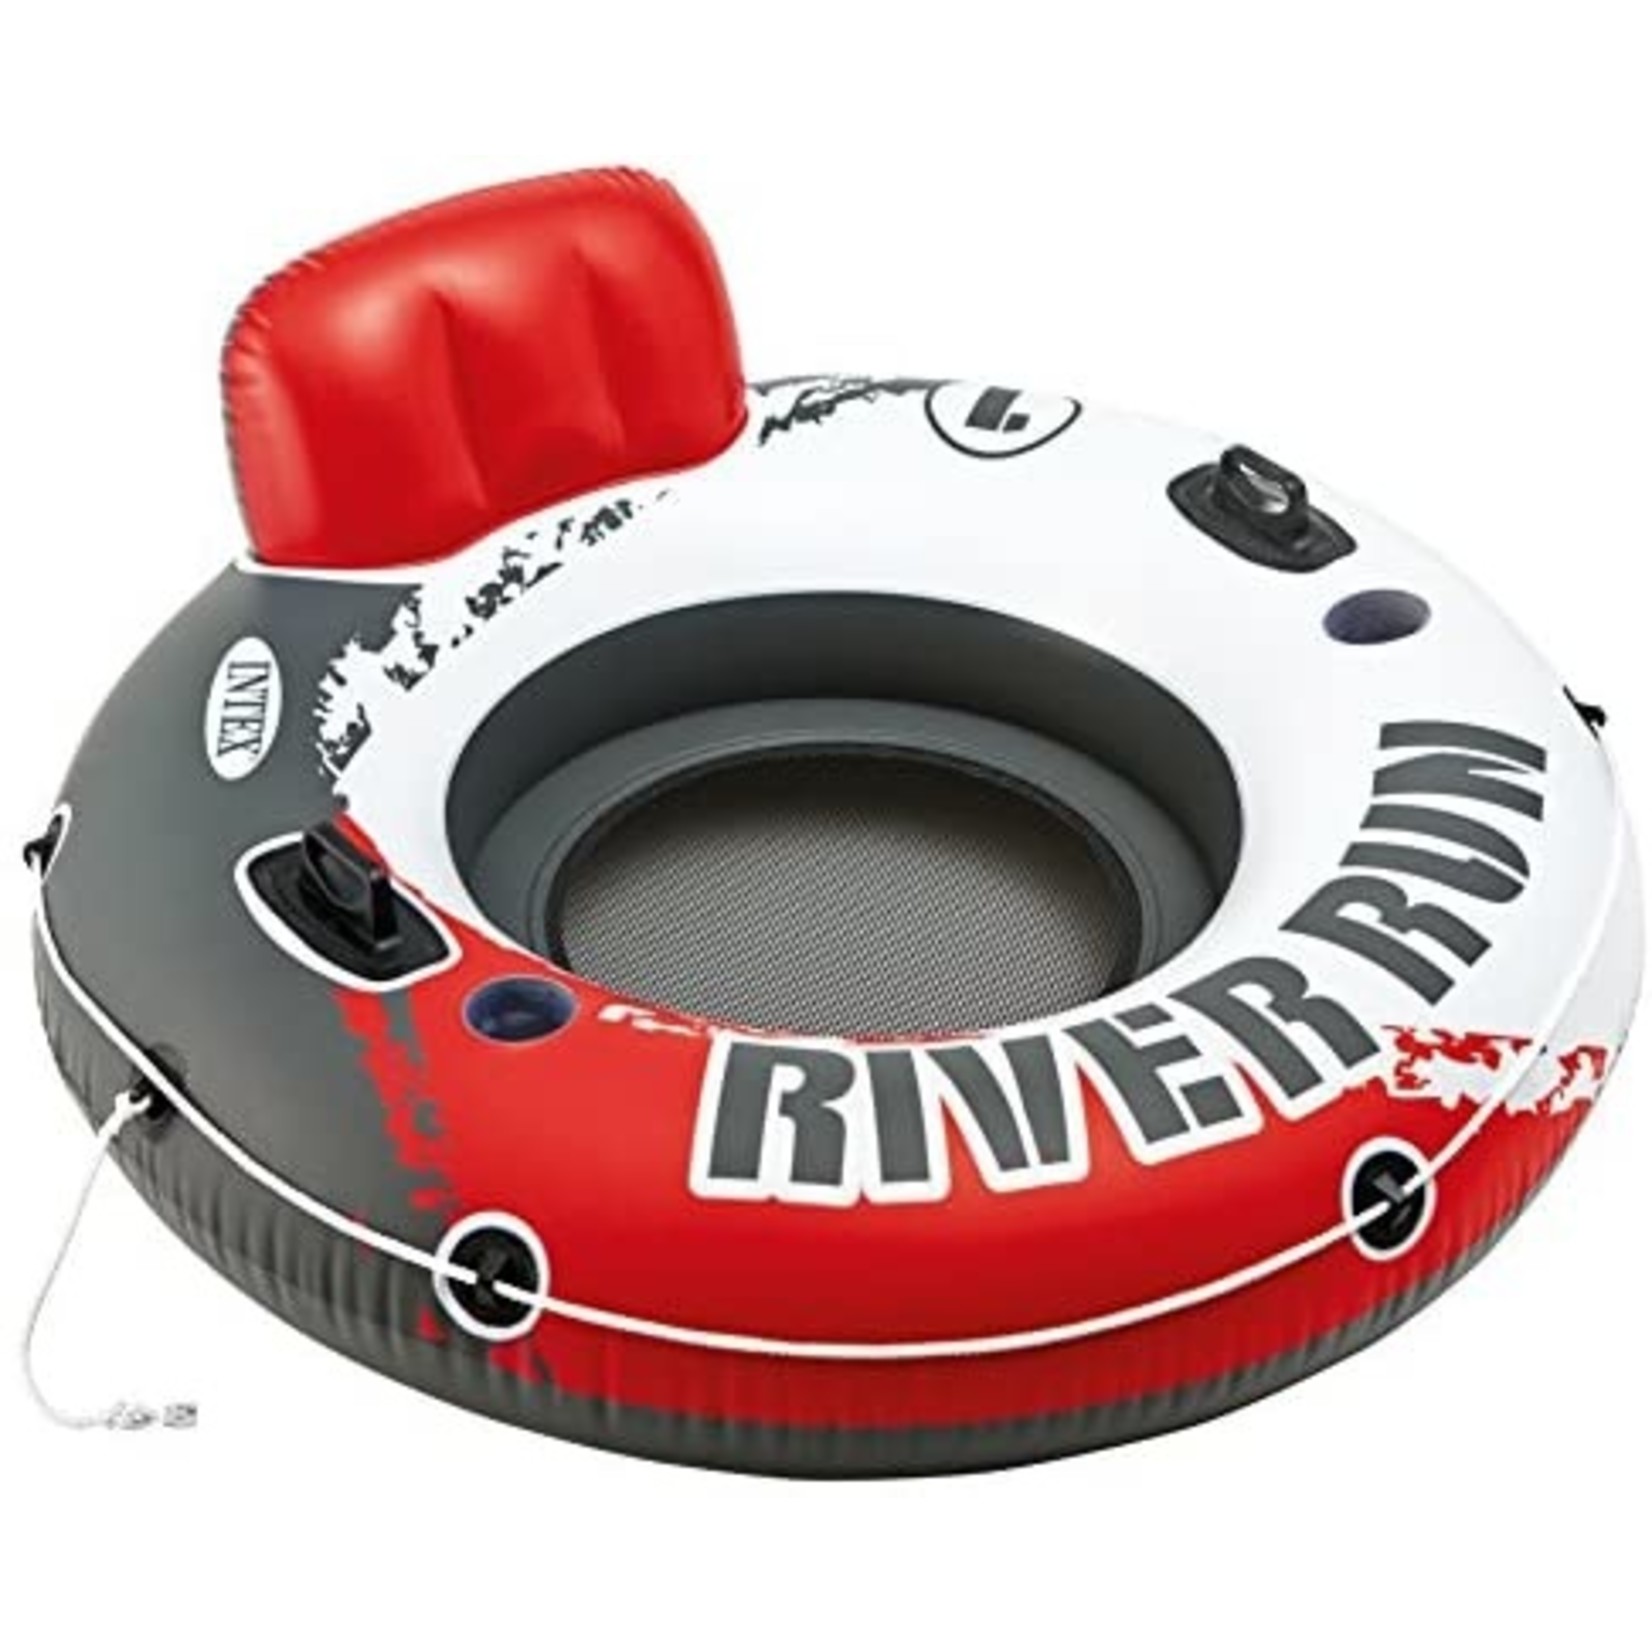 Intex River Run 1 - Red